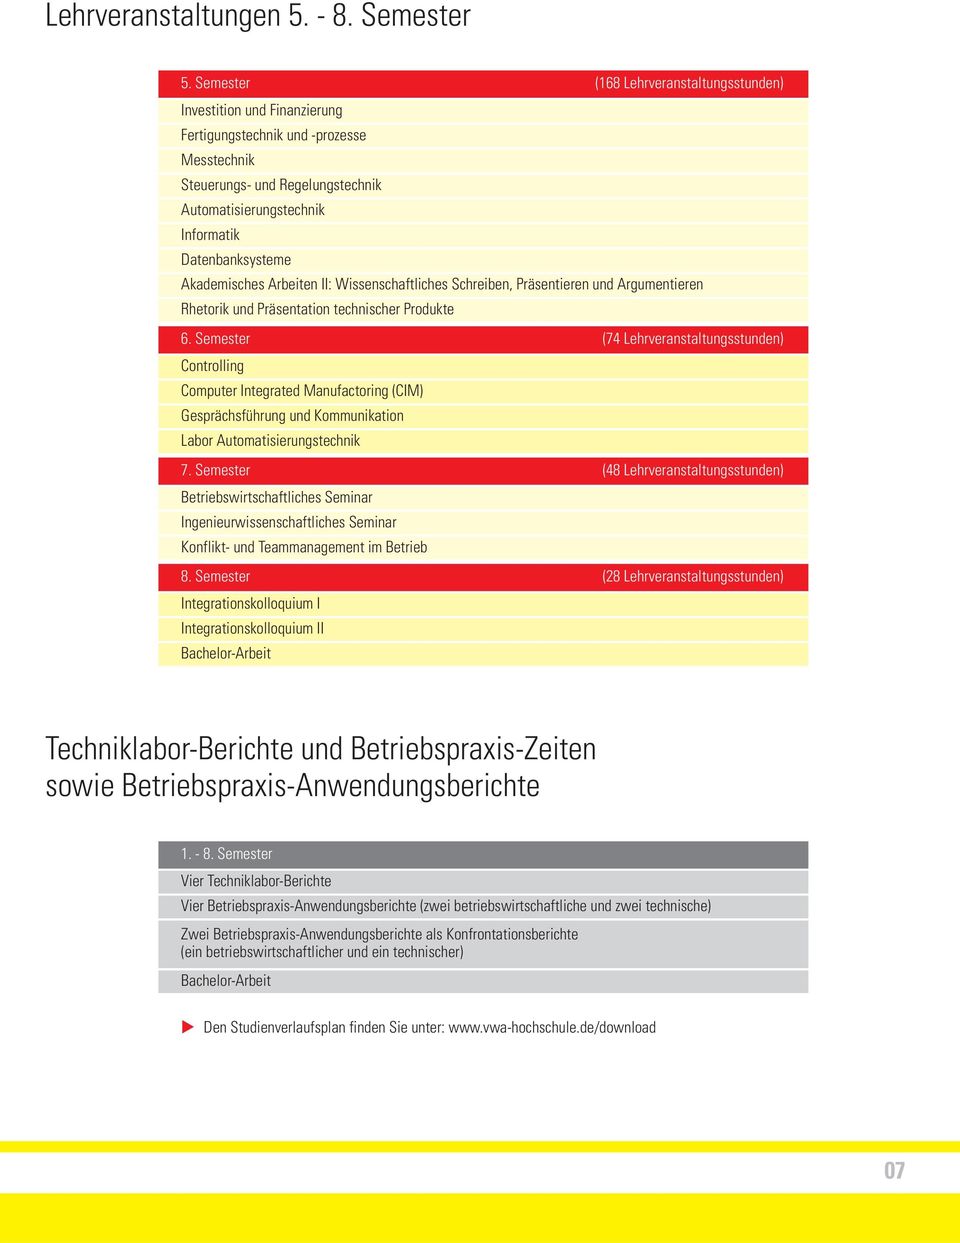 Akademisches Arbeiten II: Wissenschaftliches Schreiben, Präsentieren und Argumentieren Rhetorik und Präsentation technischer Produkte 6.